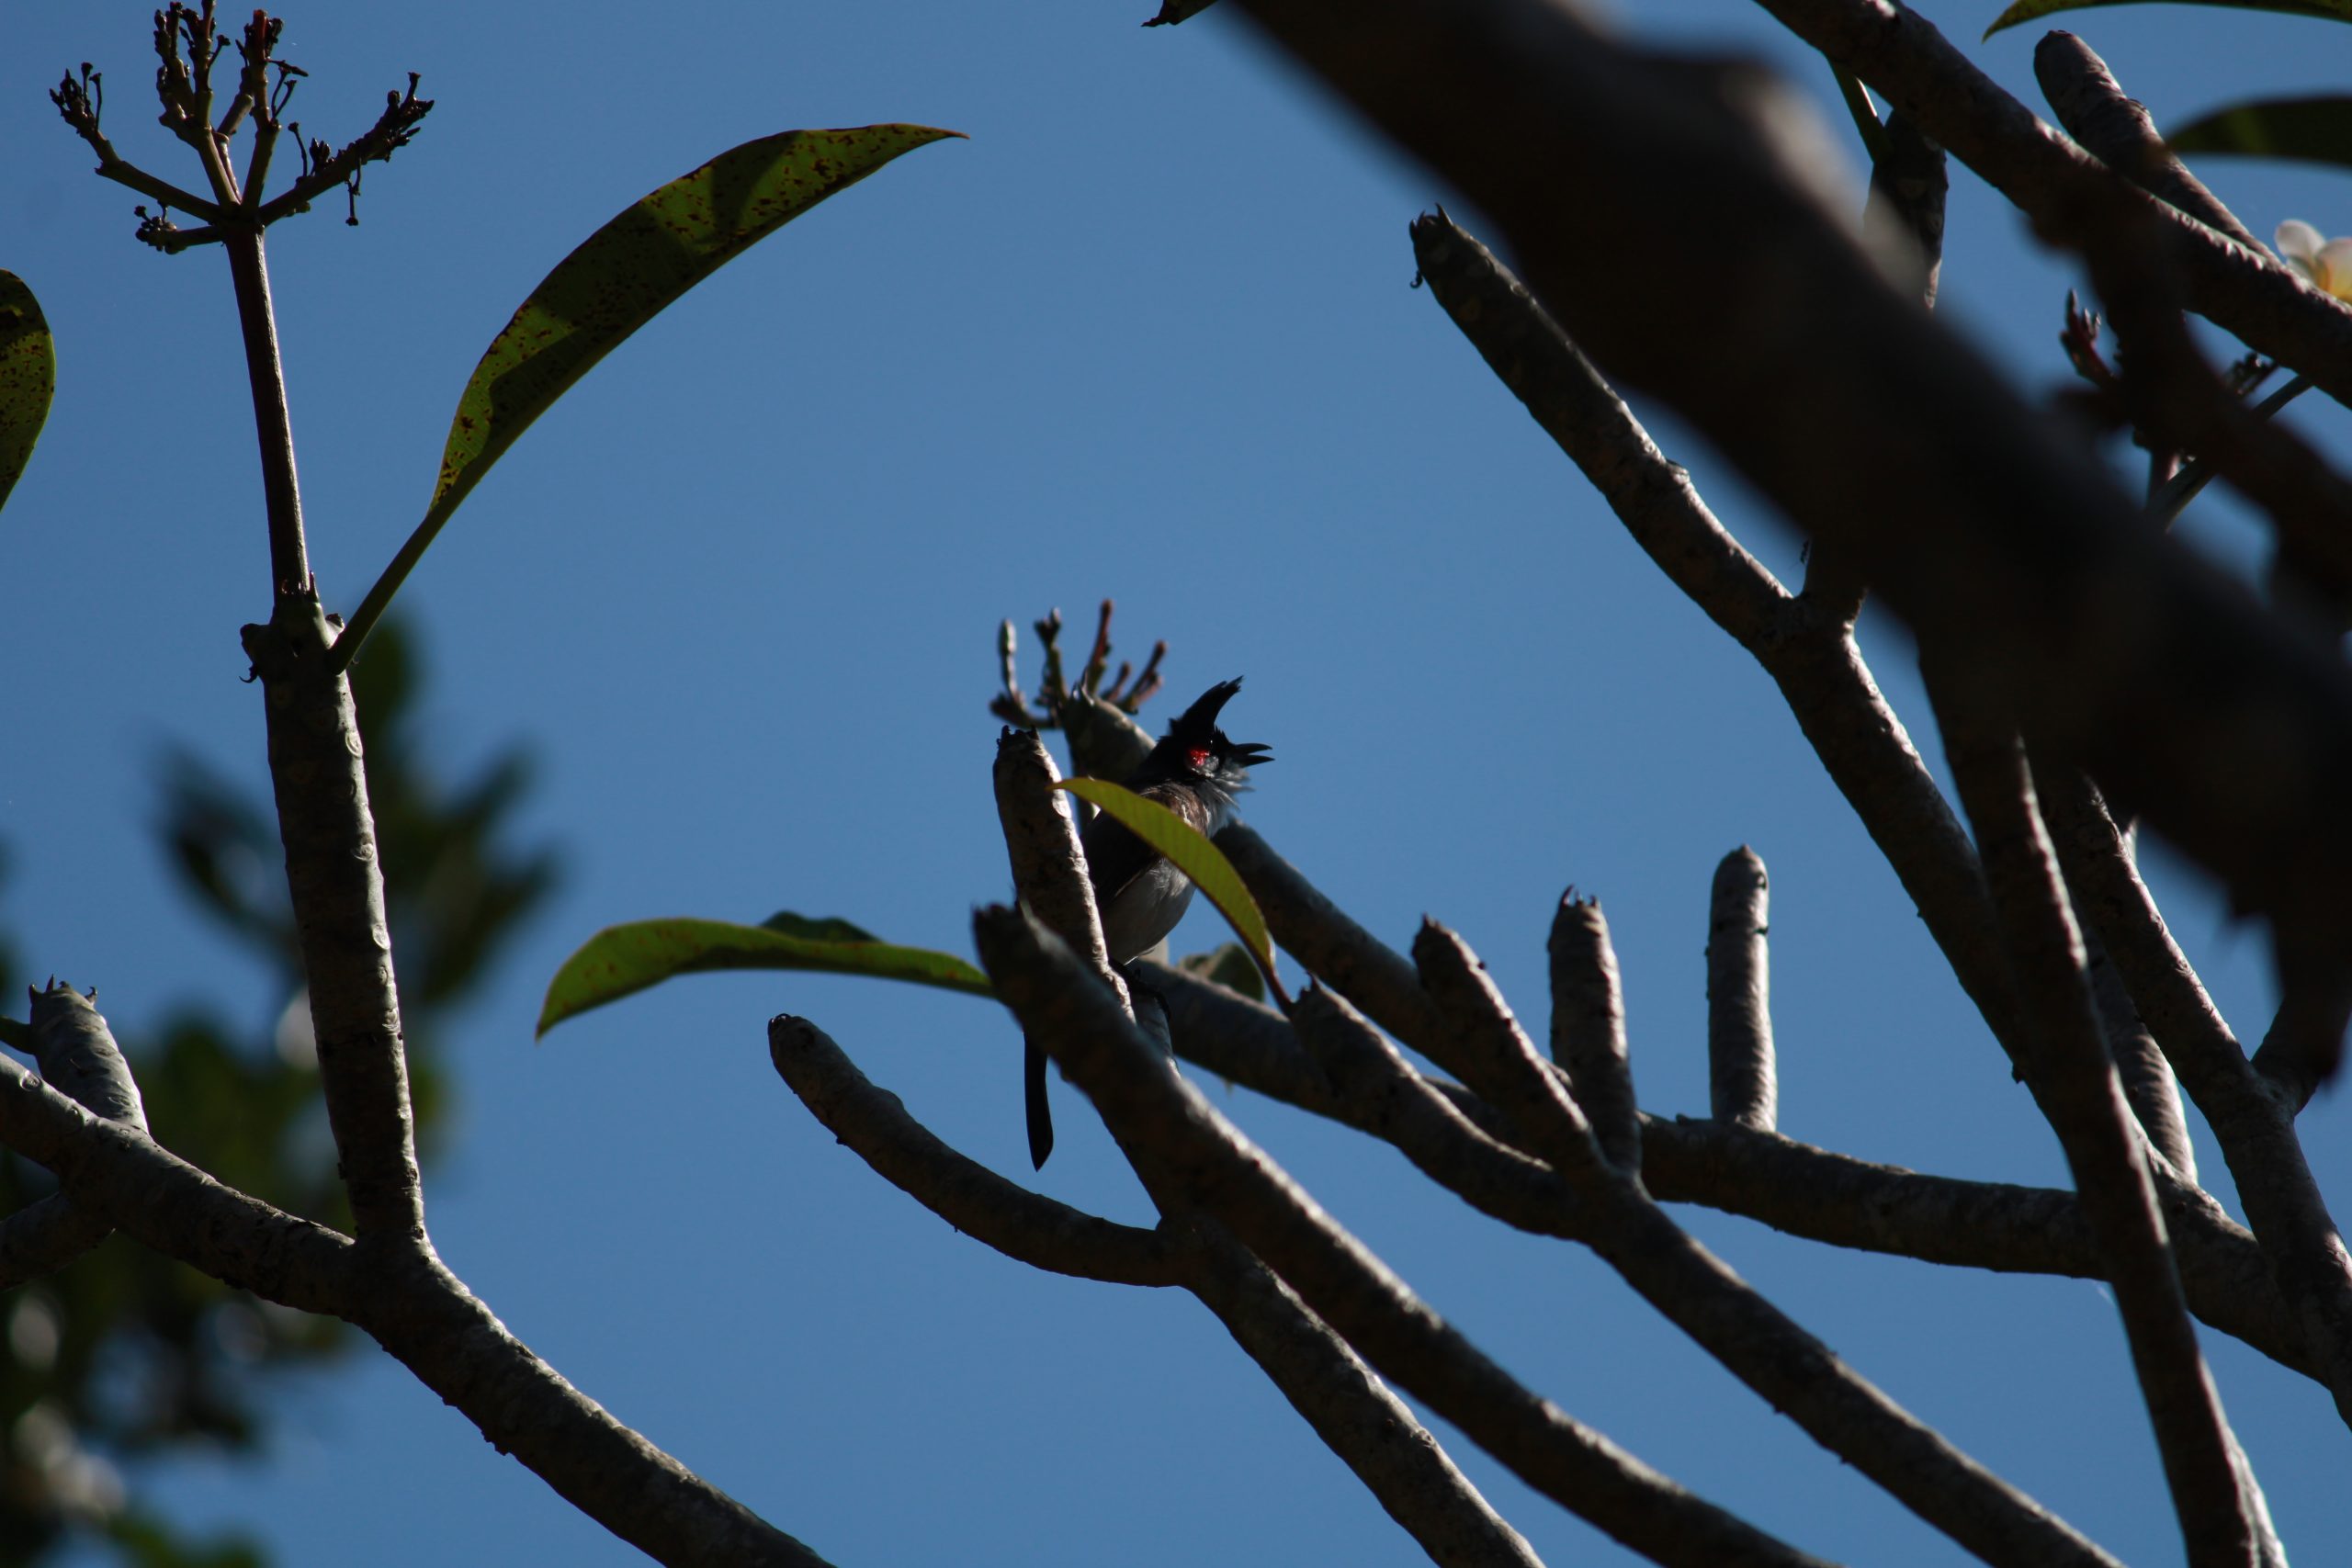 Bird Sitting on tree